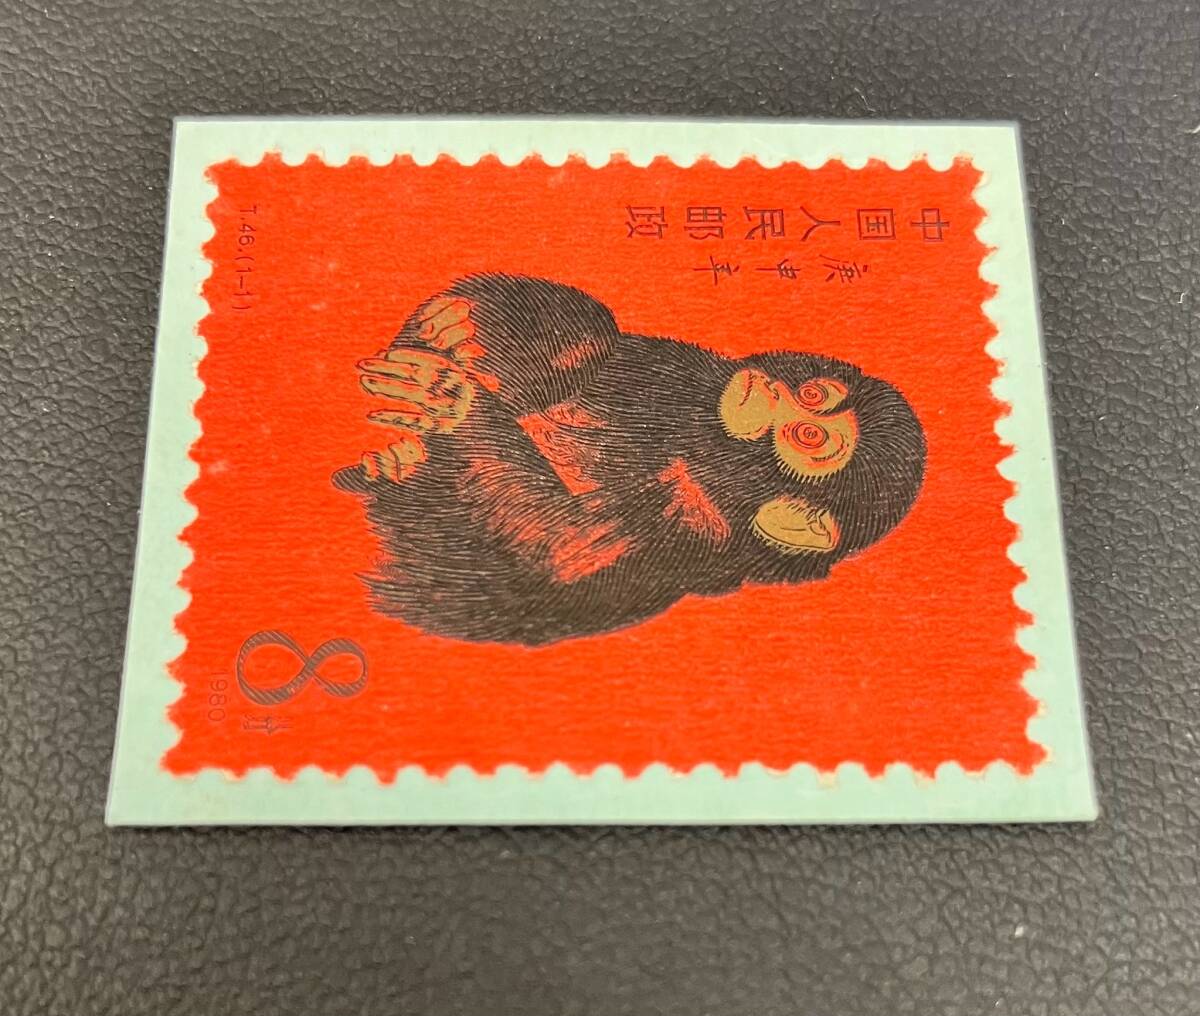 11044 未使用 中国切手 T46 赤猿 申 子ザル 1980年 年賀切手 8分 赤